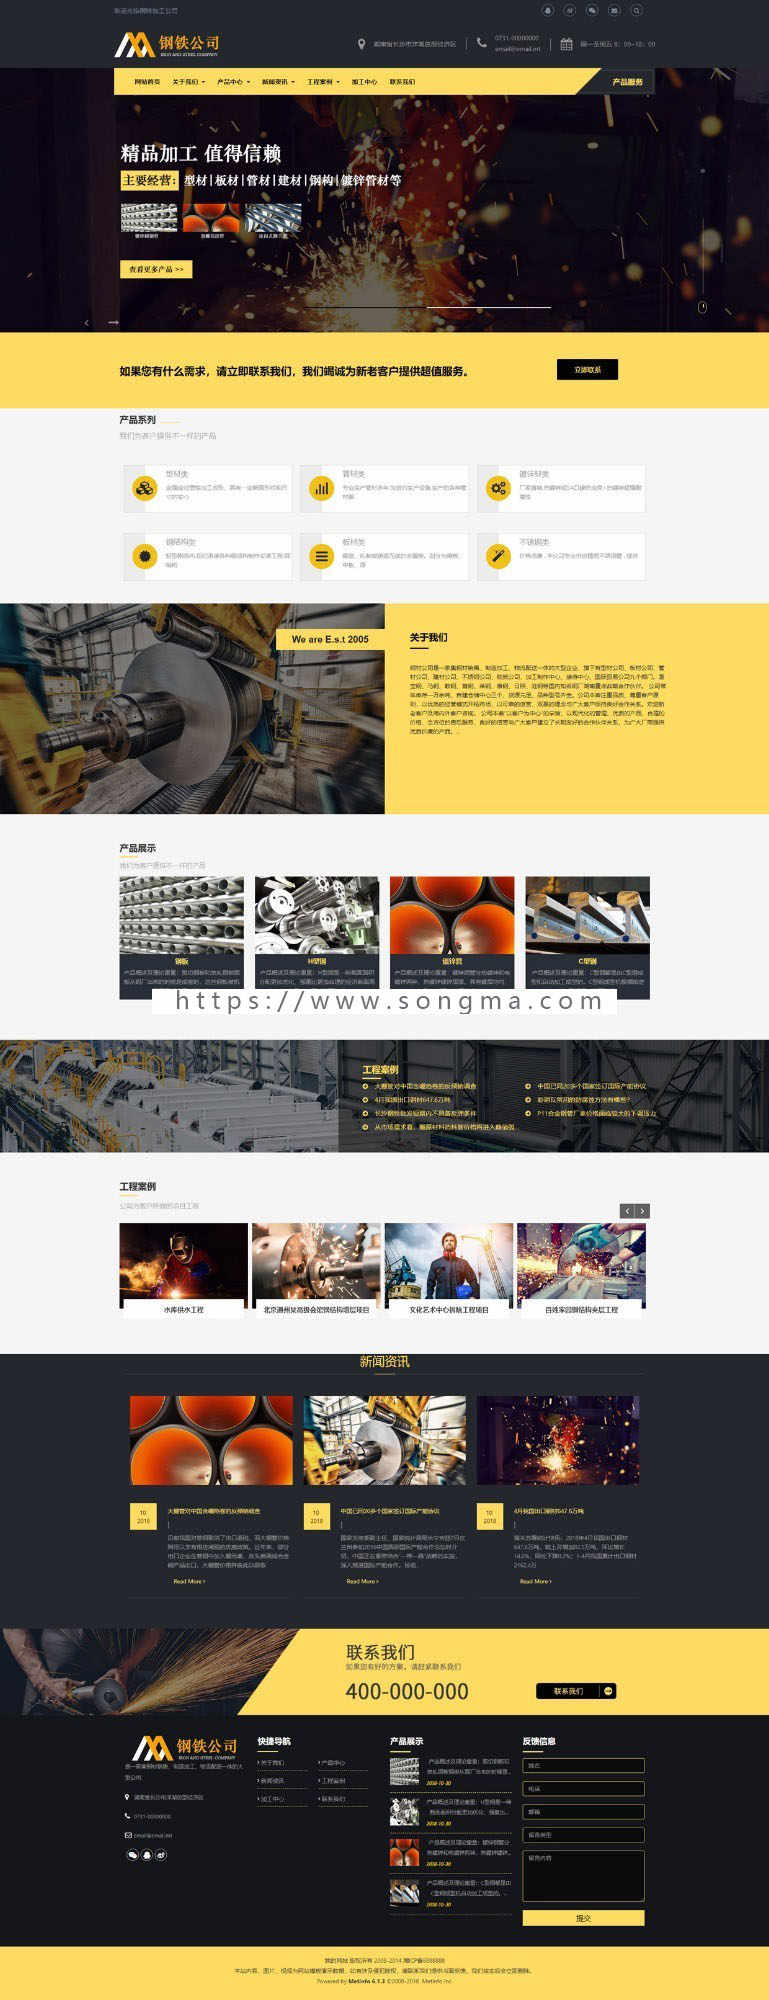 钢铁加工公司网站模板钢铁制造企业mui389响应式可视化编辑模板